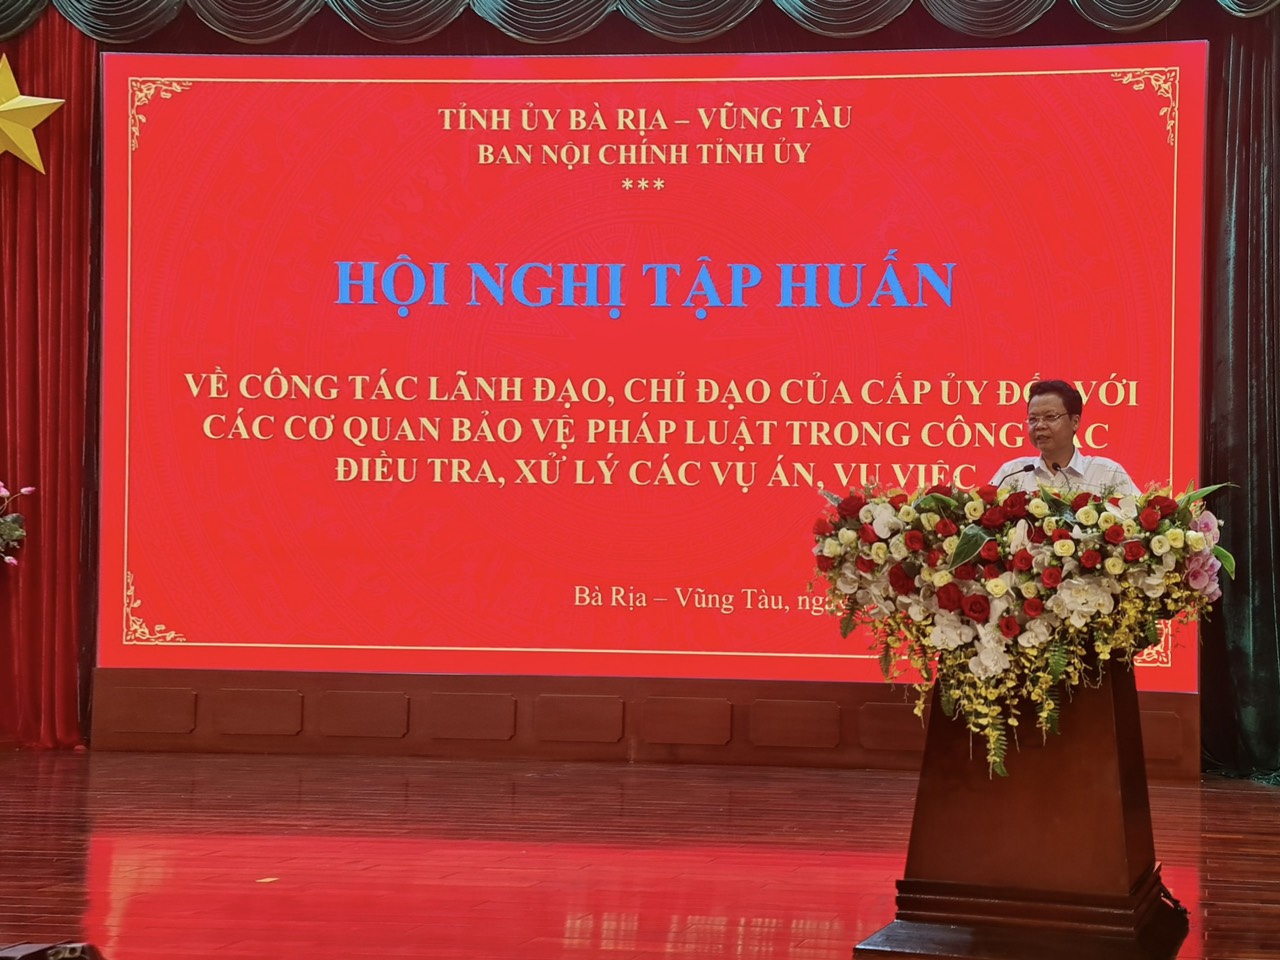 Đồng chí Trịnh Thăng Quyết, Phó, Vụ trưởng Vụ Địa phương III, Ban Nội chính Trung ương trình bày nội dung chuyên đề tại Hội nghị